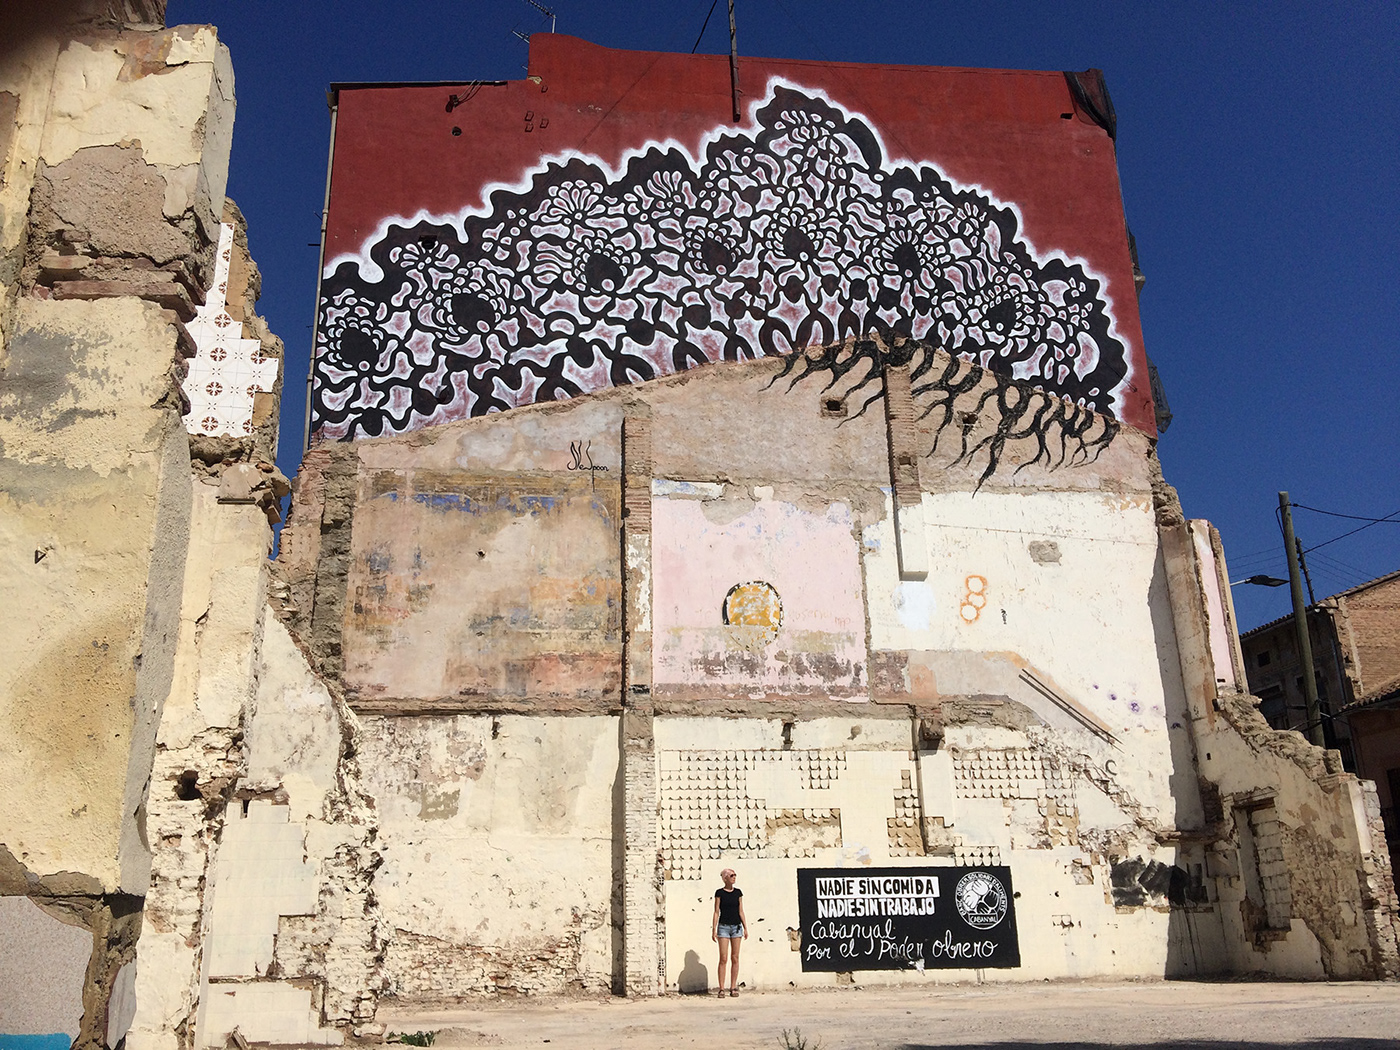 Global Graffiti Mural murales Muralism NeSpoon public art stencil graffiti Street Art  urban art